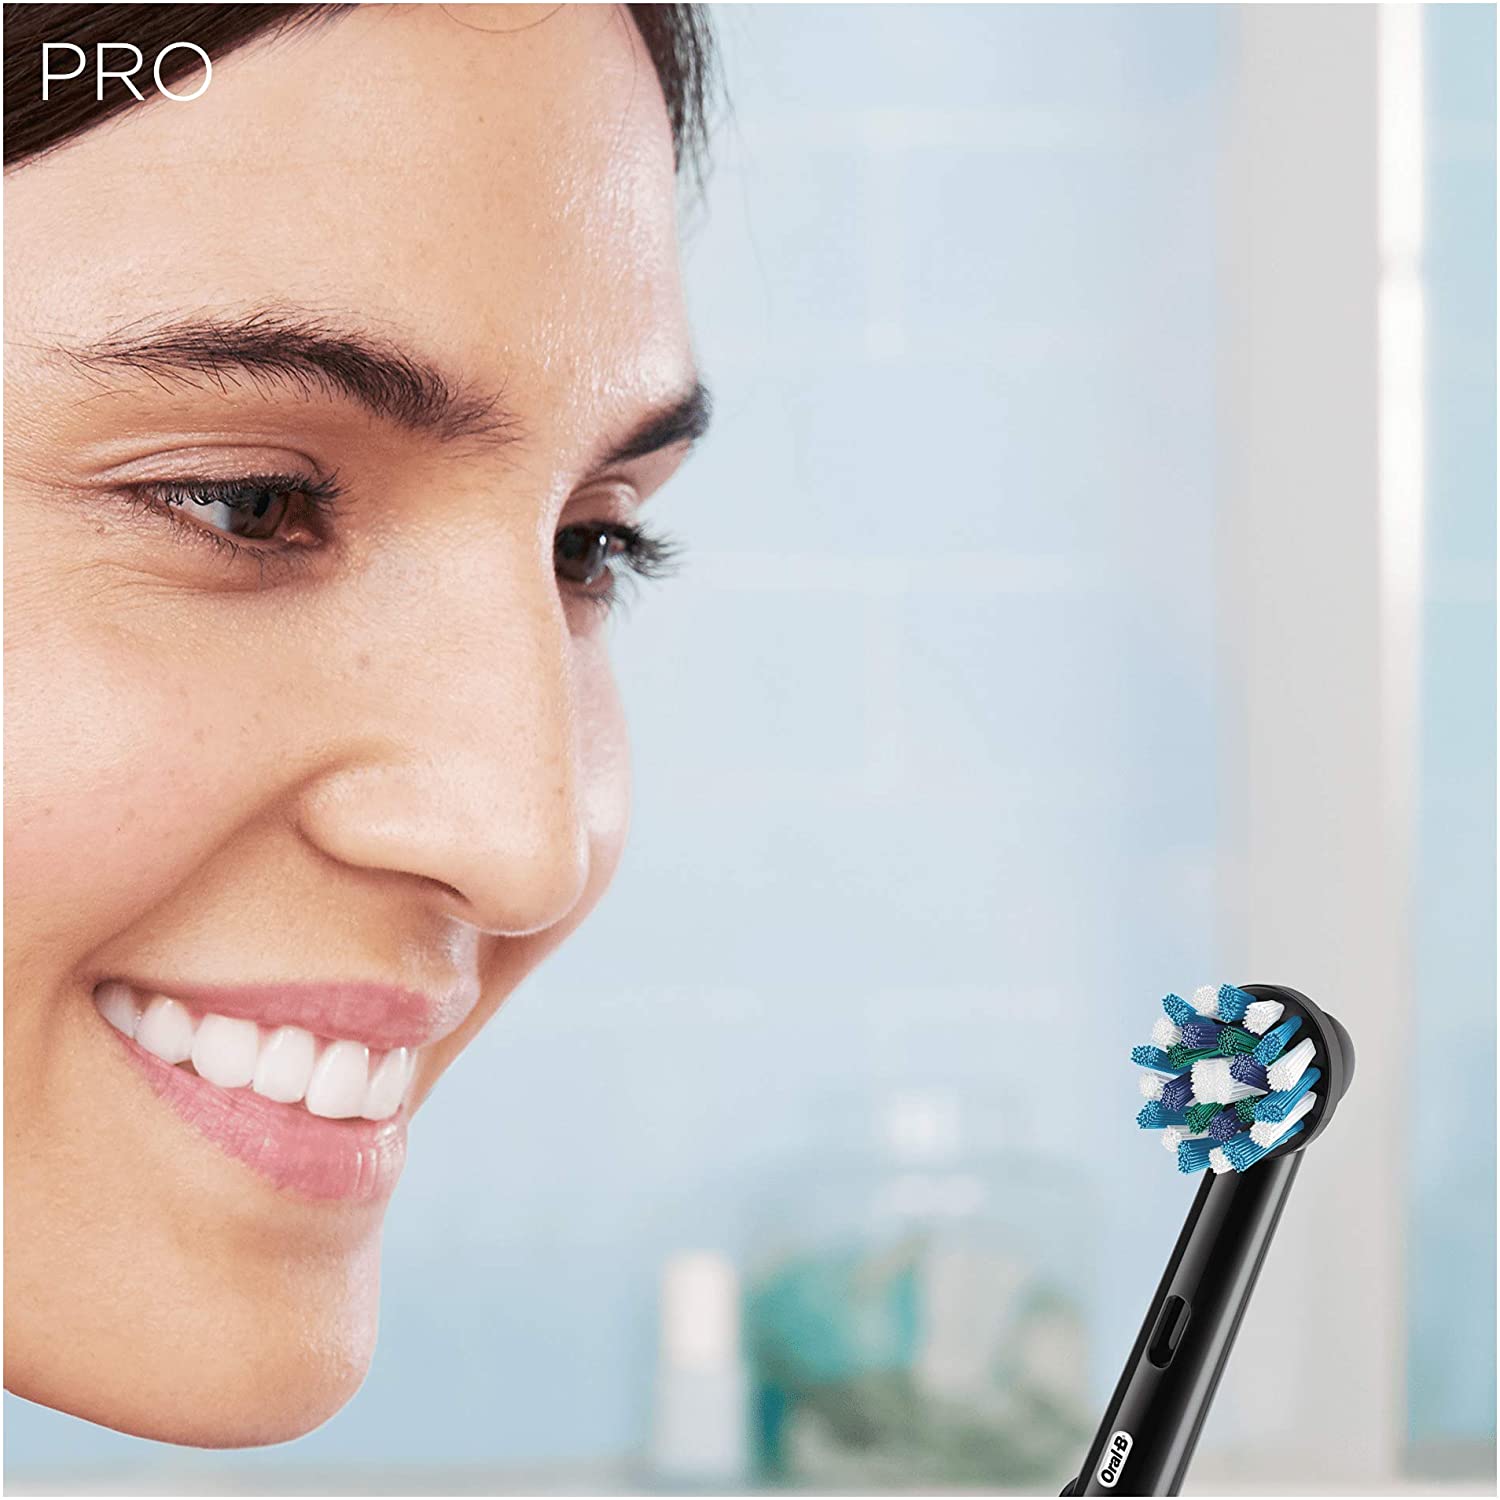 Oral-B lancia una promozione sul Pro 3, per una pulizia quotidiana professionale thumbnail